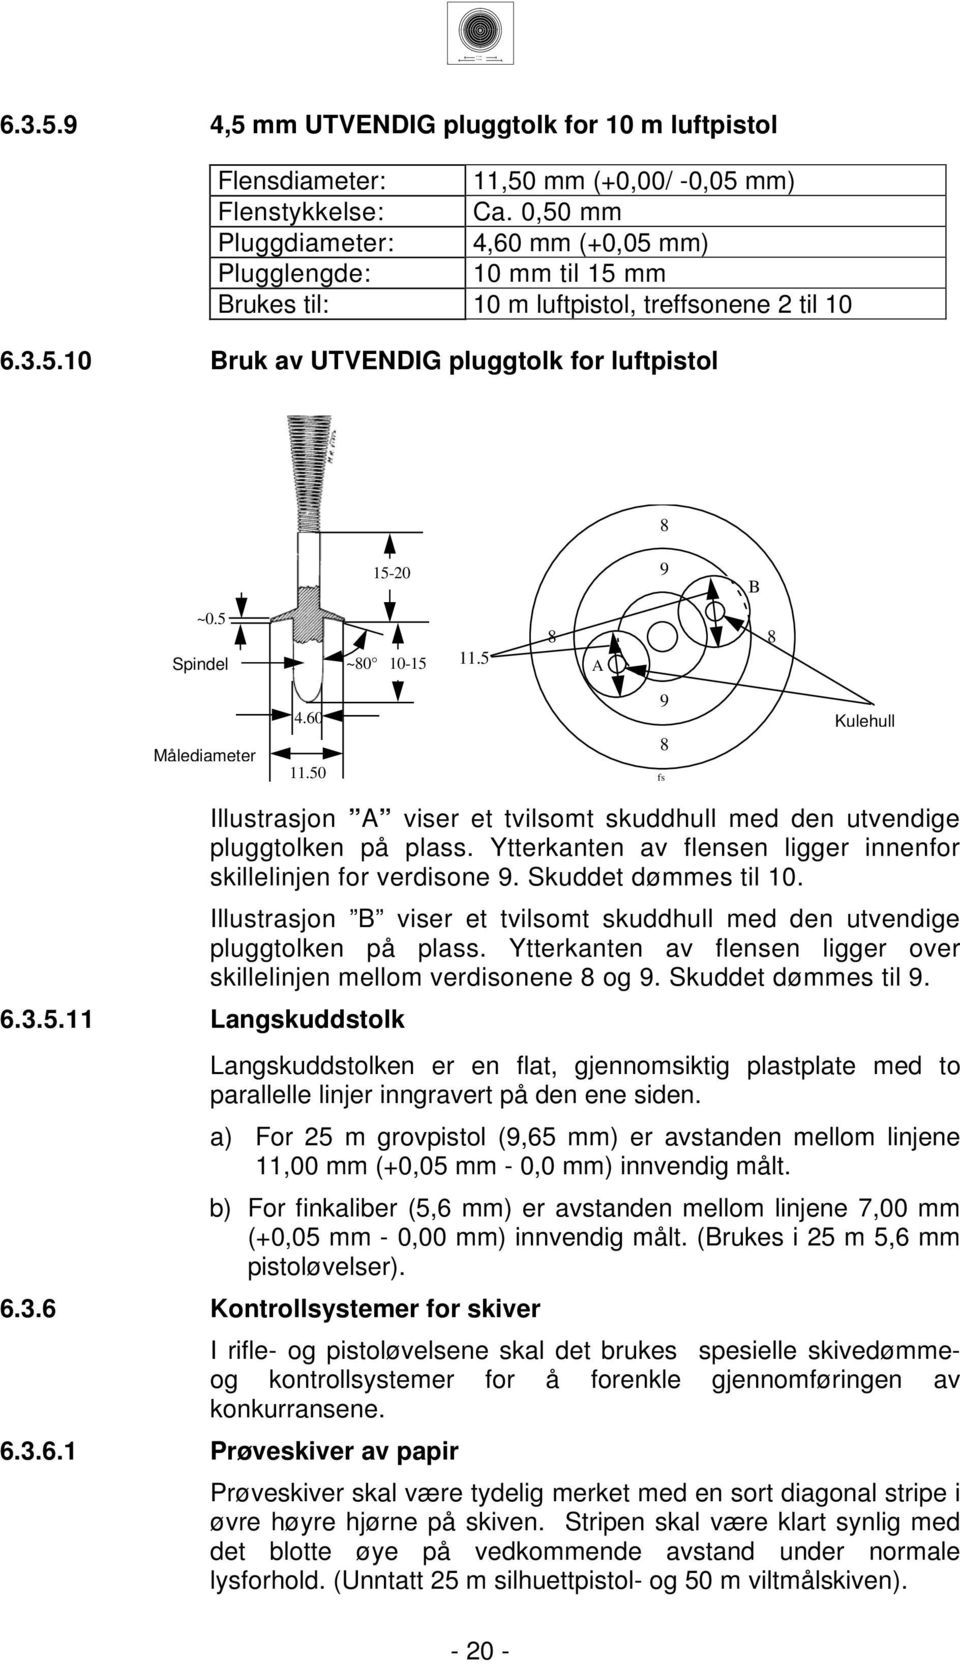 A Measuring Målediameter diameter.0.0 9 fs Bullethole Kulehull... Langskuddstolk Illustrasjon A viser et tvilsomt skuddhull med den utvendige pluggtolken på plass.